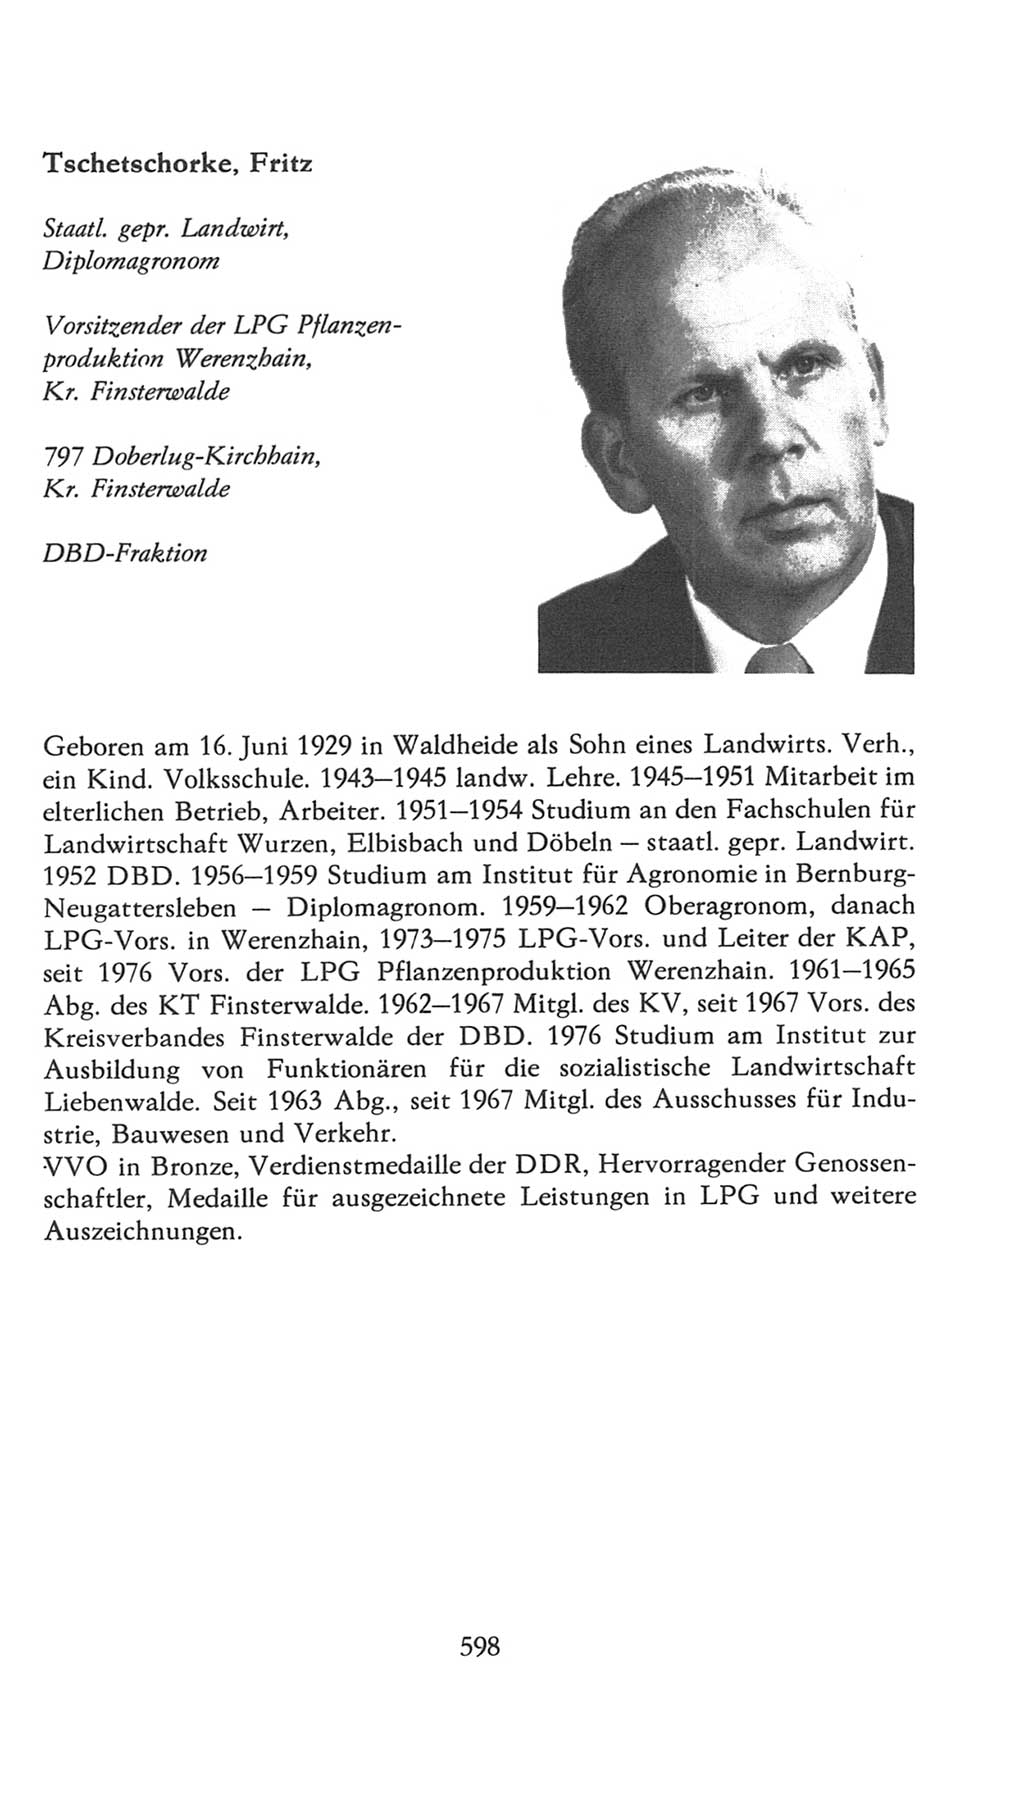 Volkskammer (VK) der Deutschen Demokratischen Republik (DDR), 7. Wahlperiode 1976-1981, Seite 598 (VK. DDR 7. WP. 1976-1981, S. 598)